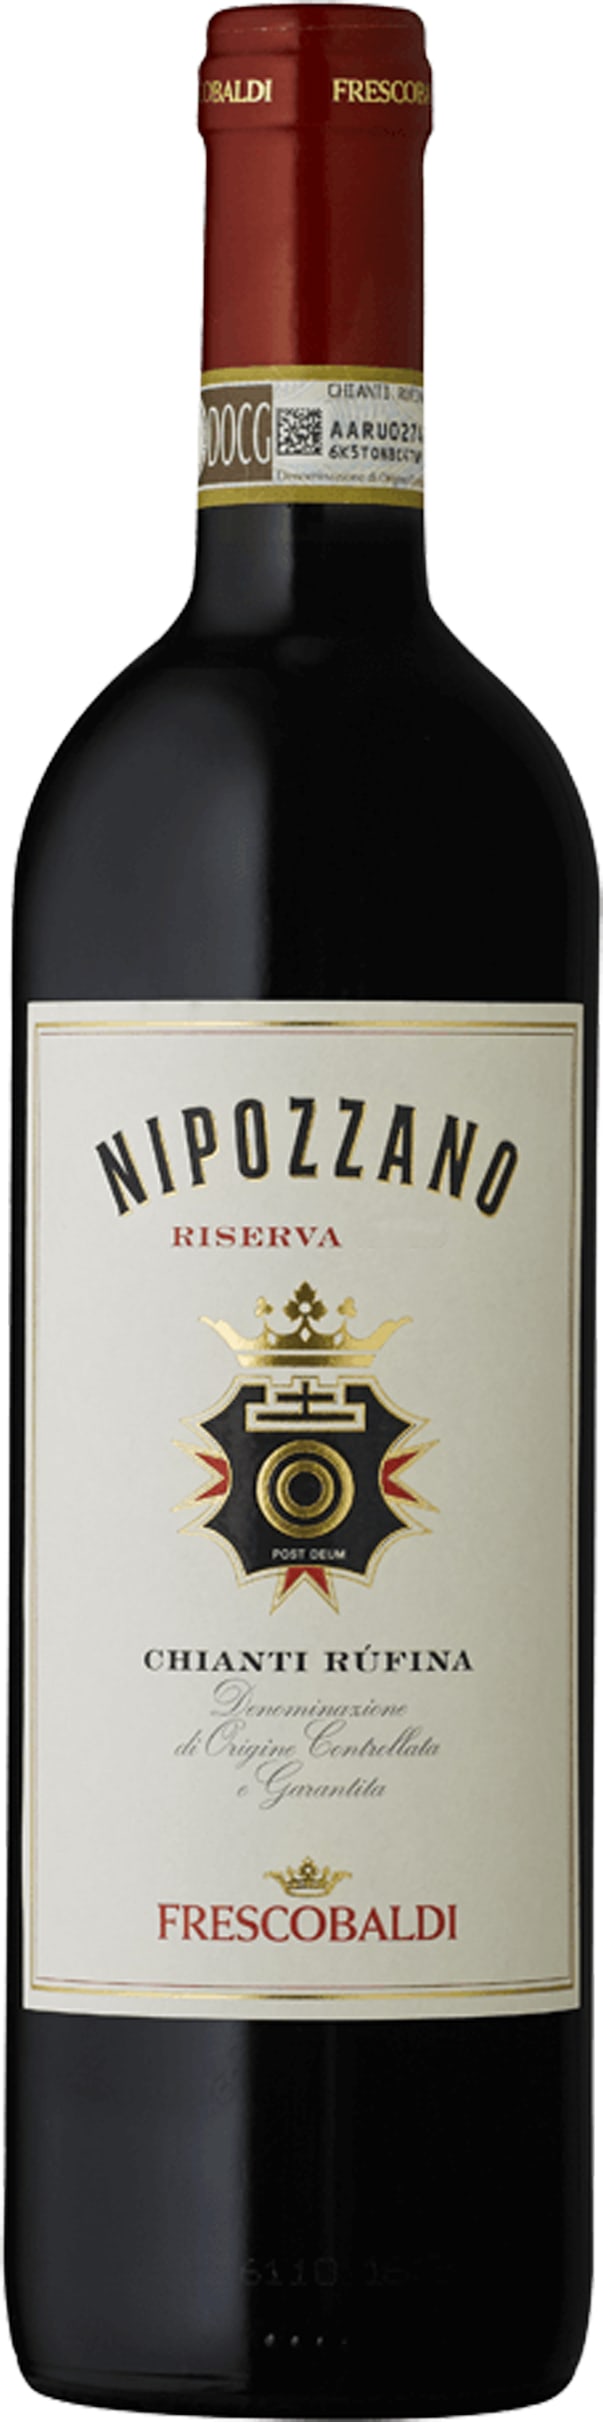 Frescobaldi Nipozzano Chianti Rufina Riserva, 375cl bottle 2017 37.5cl - Buy Frescobaldi Wines from GREAT WINES DIRECT wine shop